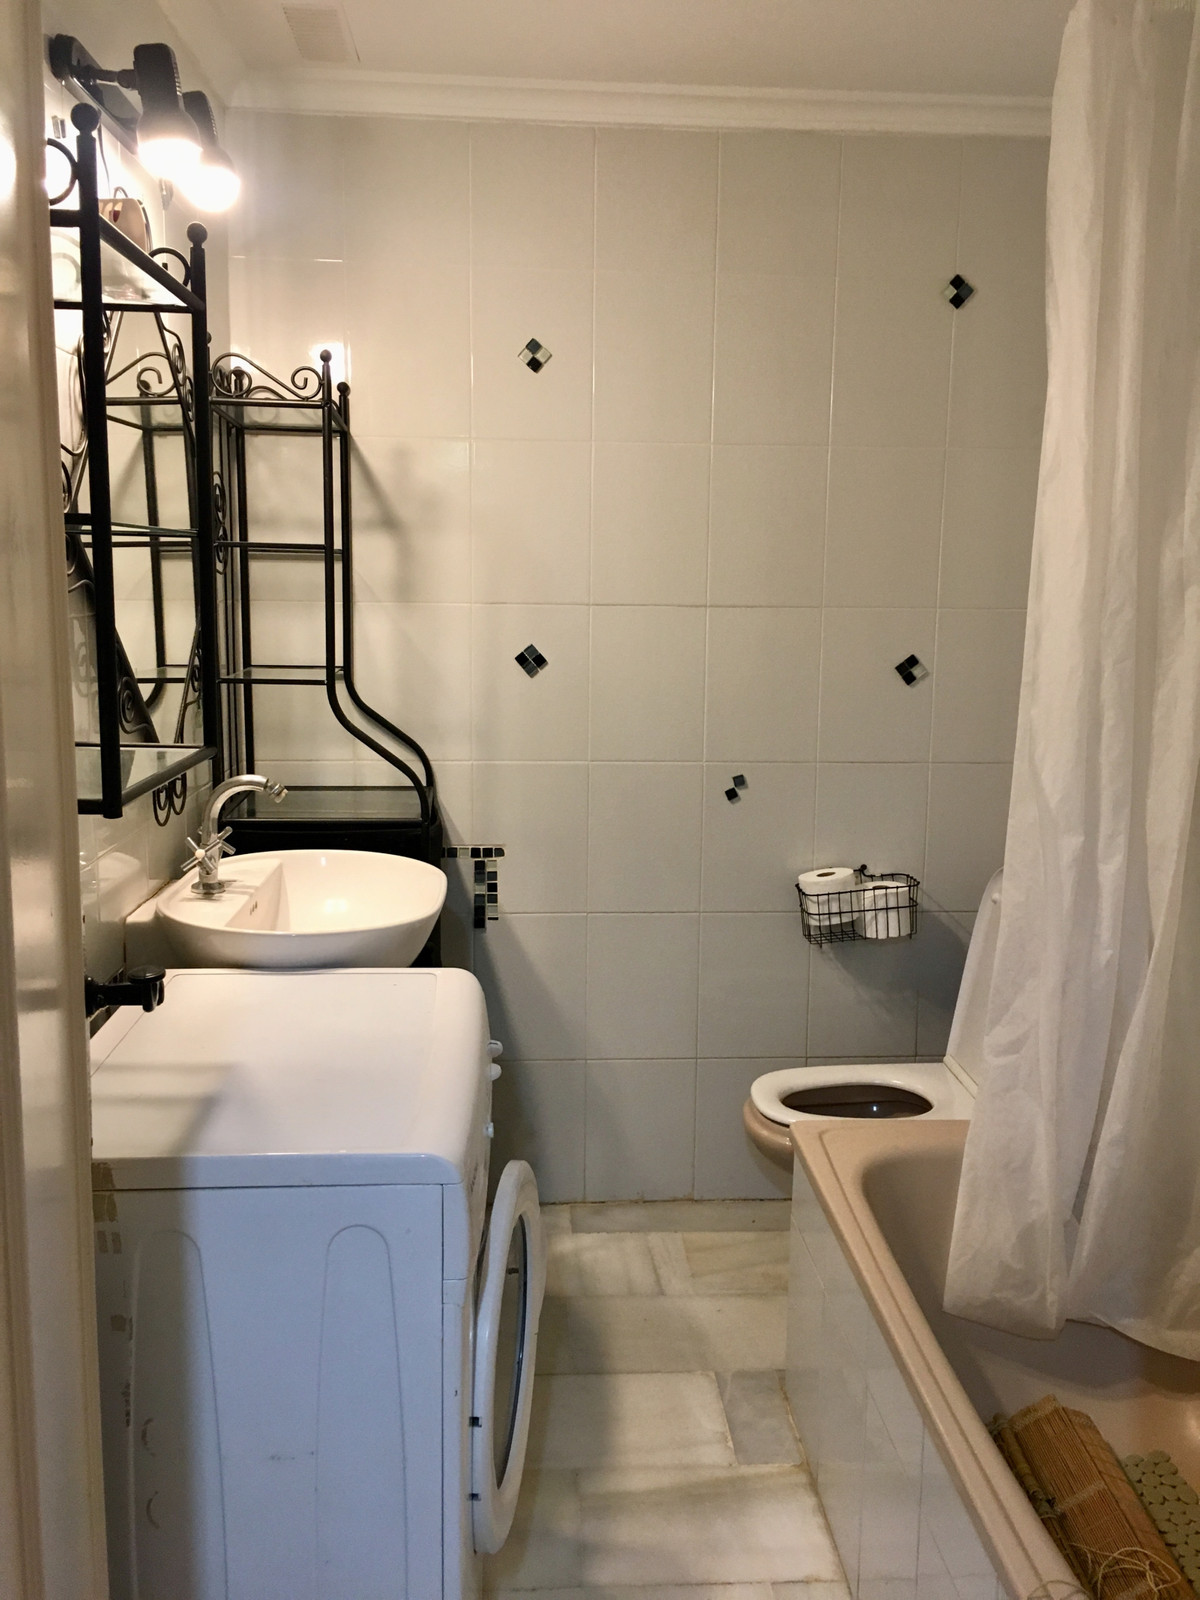 0 Bedrooms - 1 Bathrooms